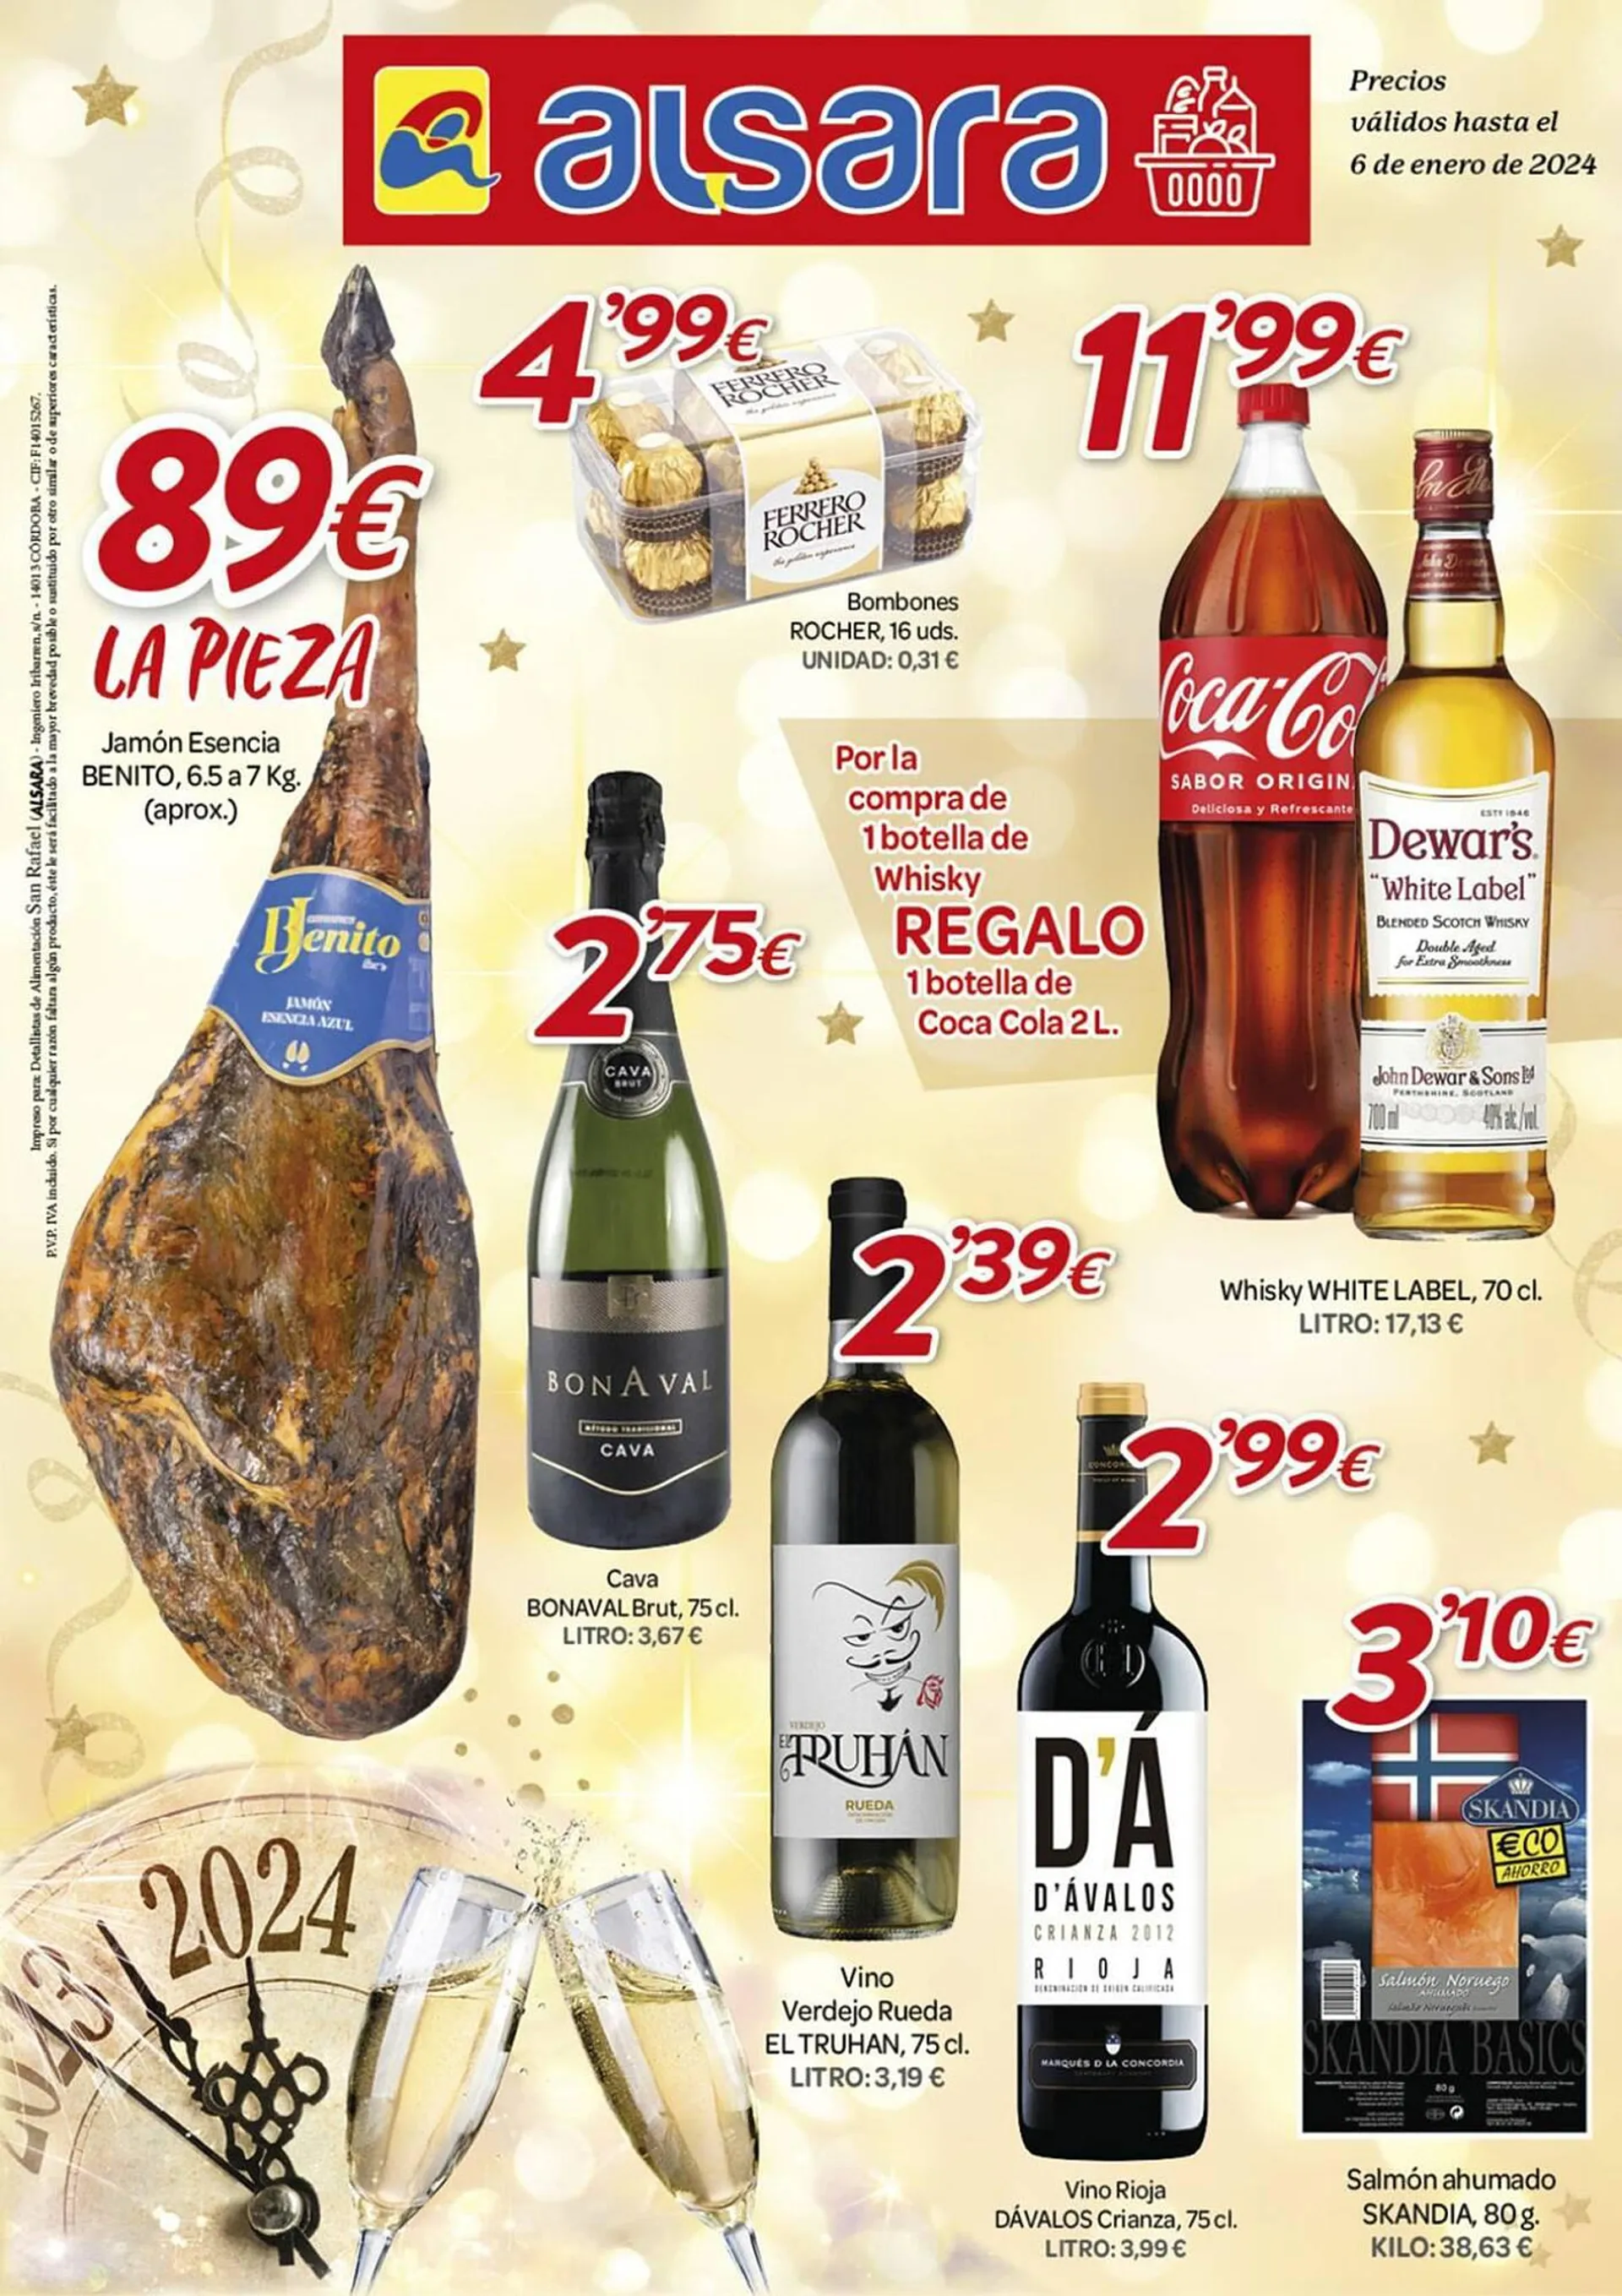 Catálogo de Folleto Alsara Supermercados 18 de diciembre al 6 de enero 2024 - Página 1